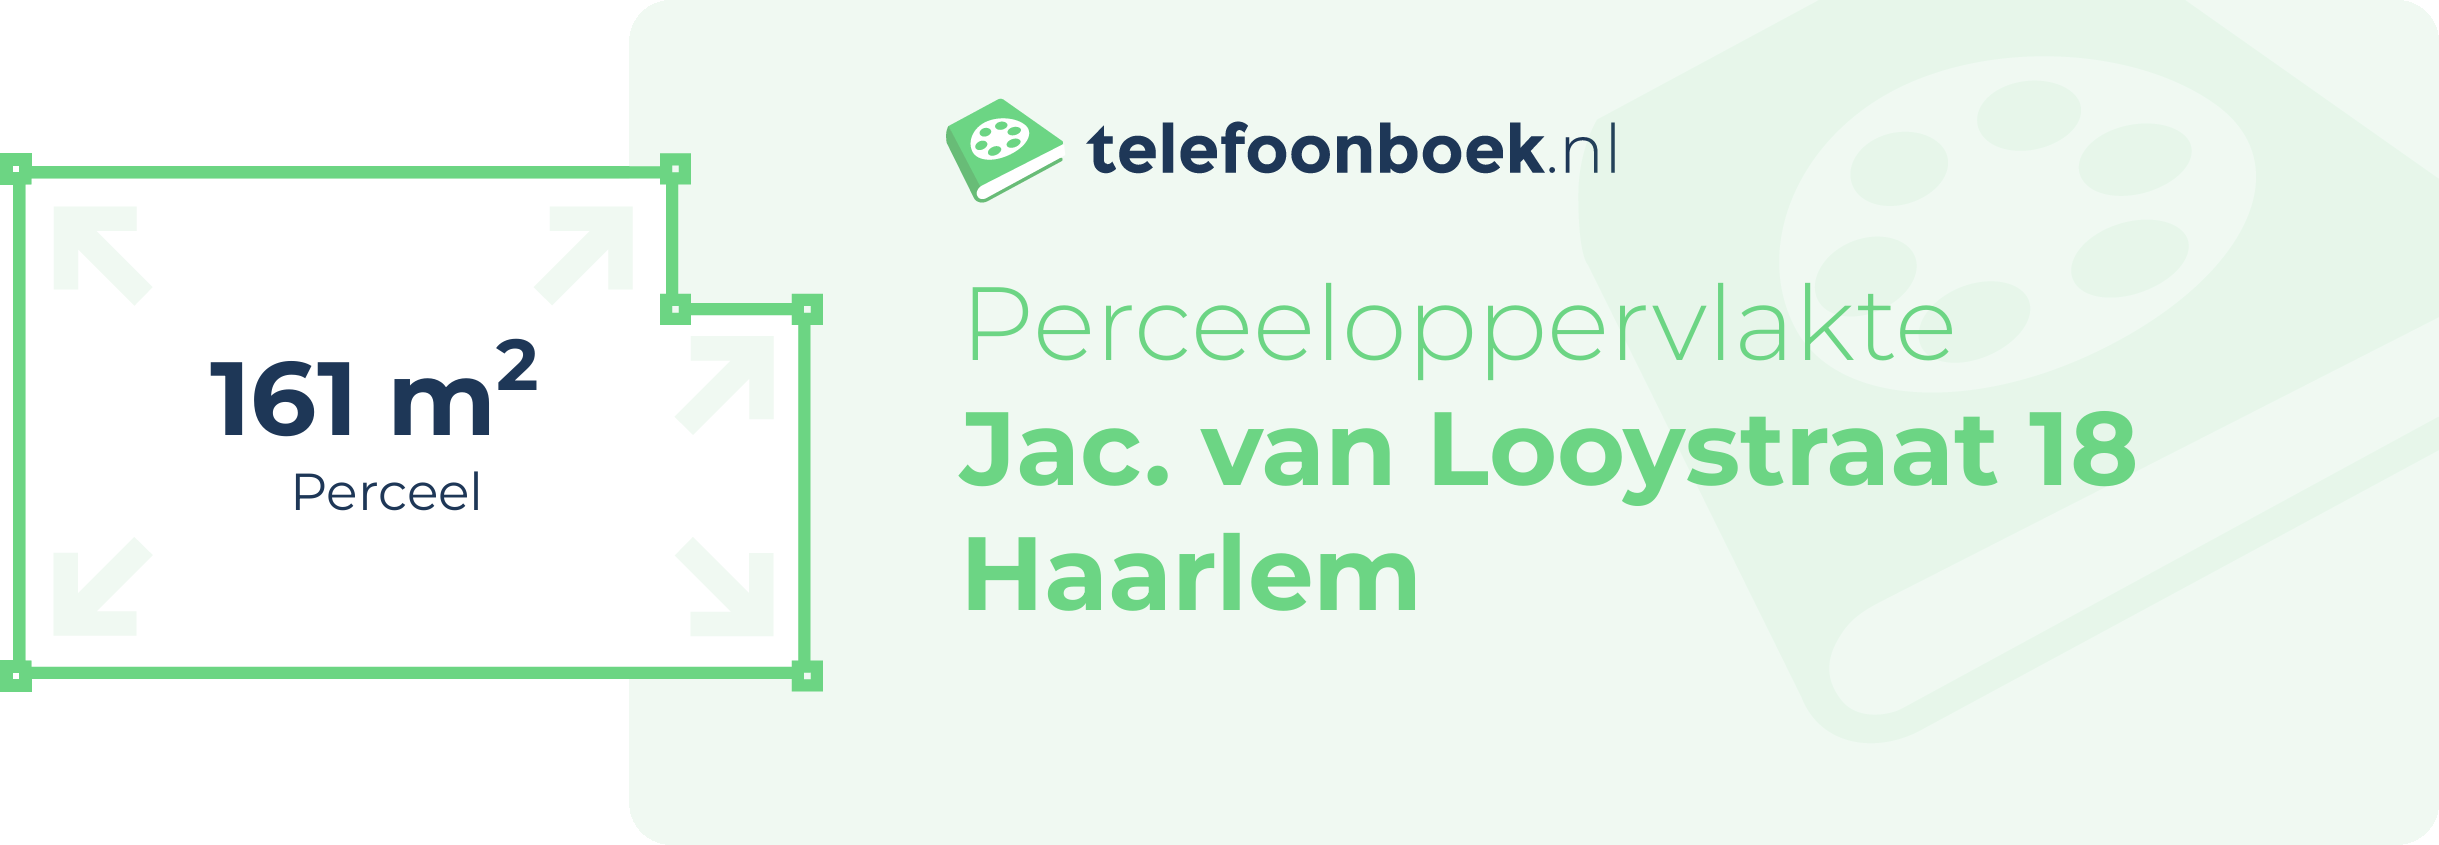 Perceeloppervlakte Jac. Van Looystraat 18 Haarlem